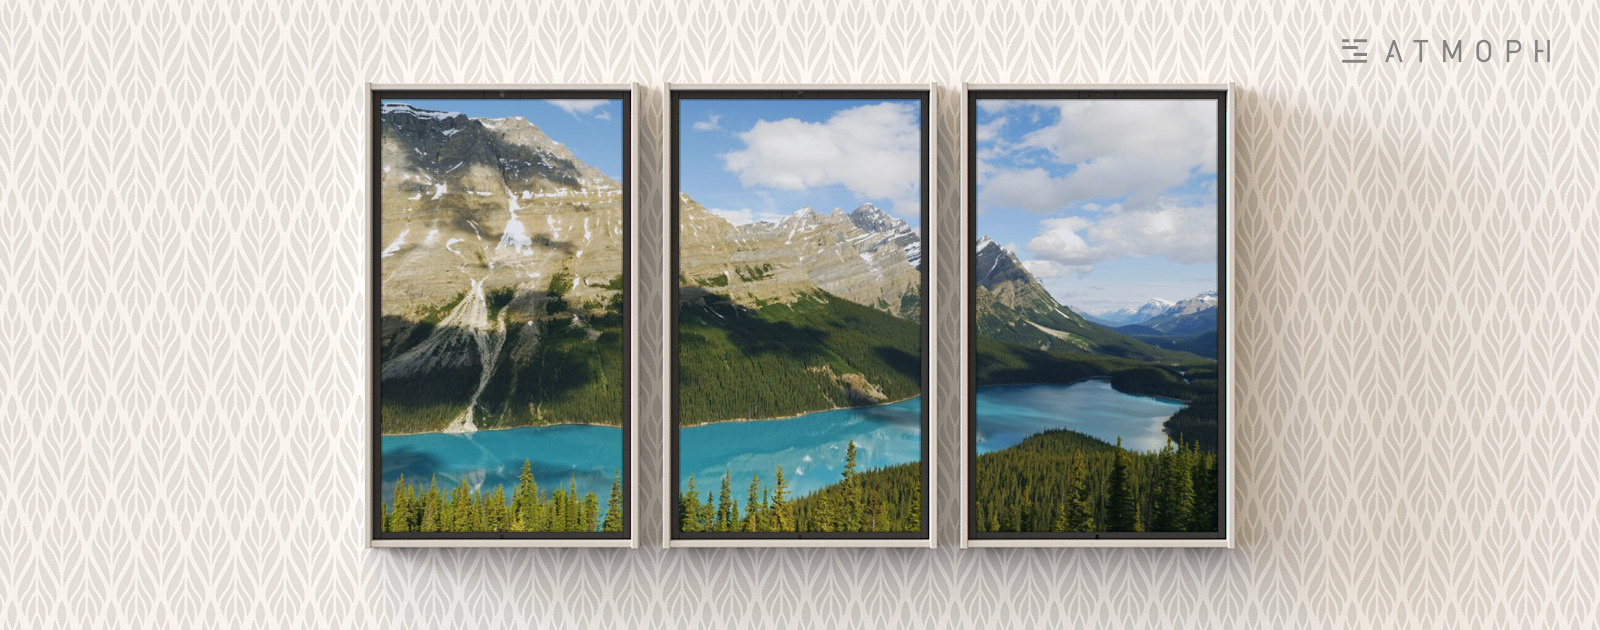 リアルの風景映像。カナダのバンフ国立公園にあるペイト湖 。その他、1,200本以上の風景映像から選択できます。映し出された映像を見て「実際にこの場所を訪れてみたい」と思ってもらえたらいいな、という願いもあり、撮影した場所の地図も表示しています。